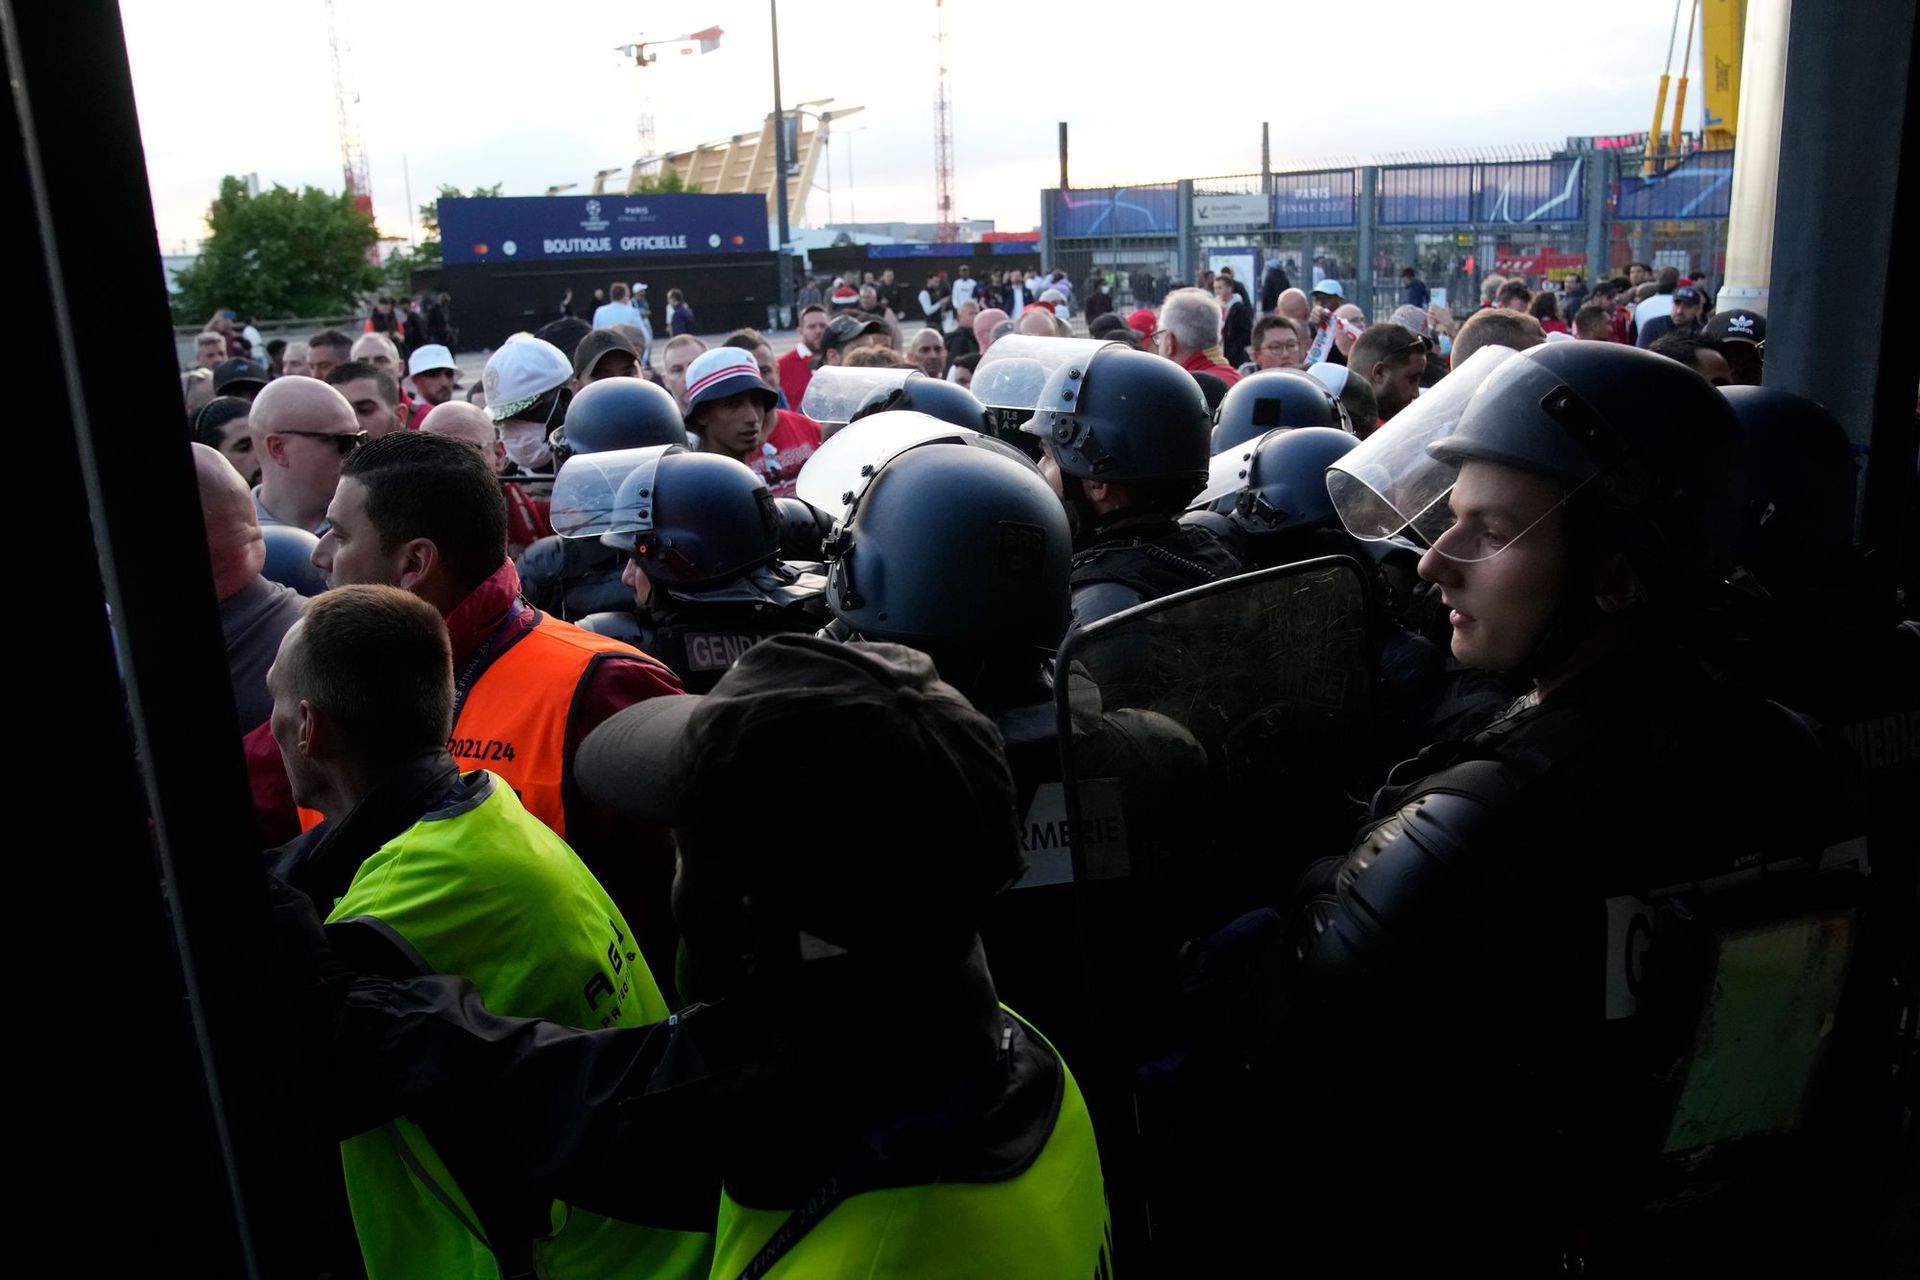 Rohamrendőrök és liverpooli szurkolók a saint-denis-i Stade de France stadionnál / Fotó: MTI/AP/Christophe Ena